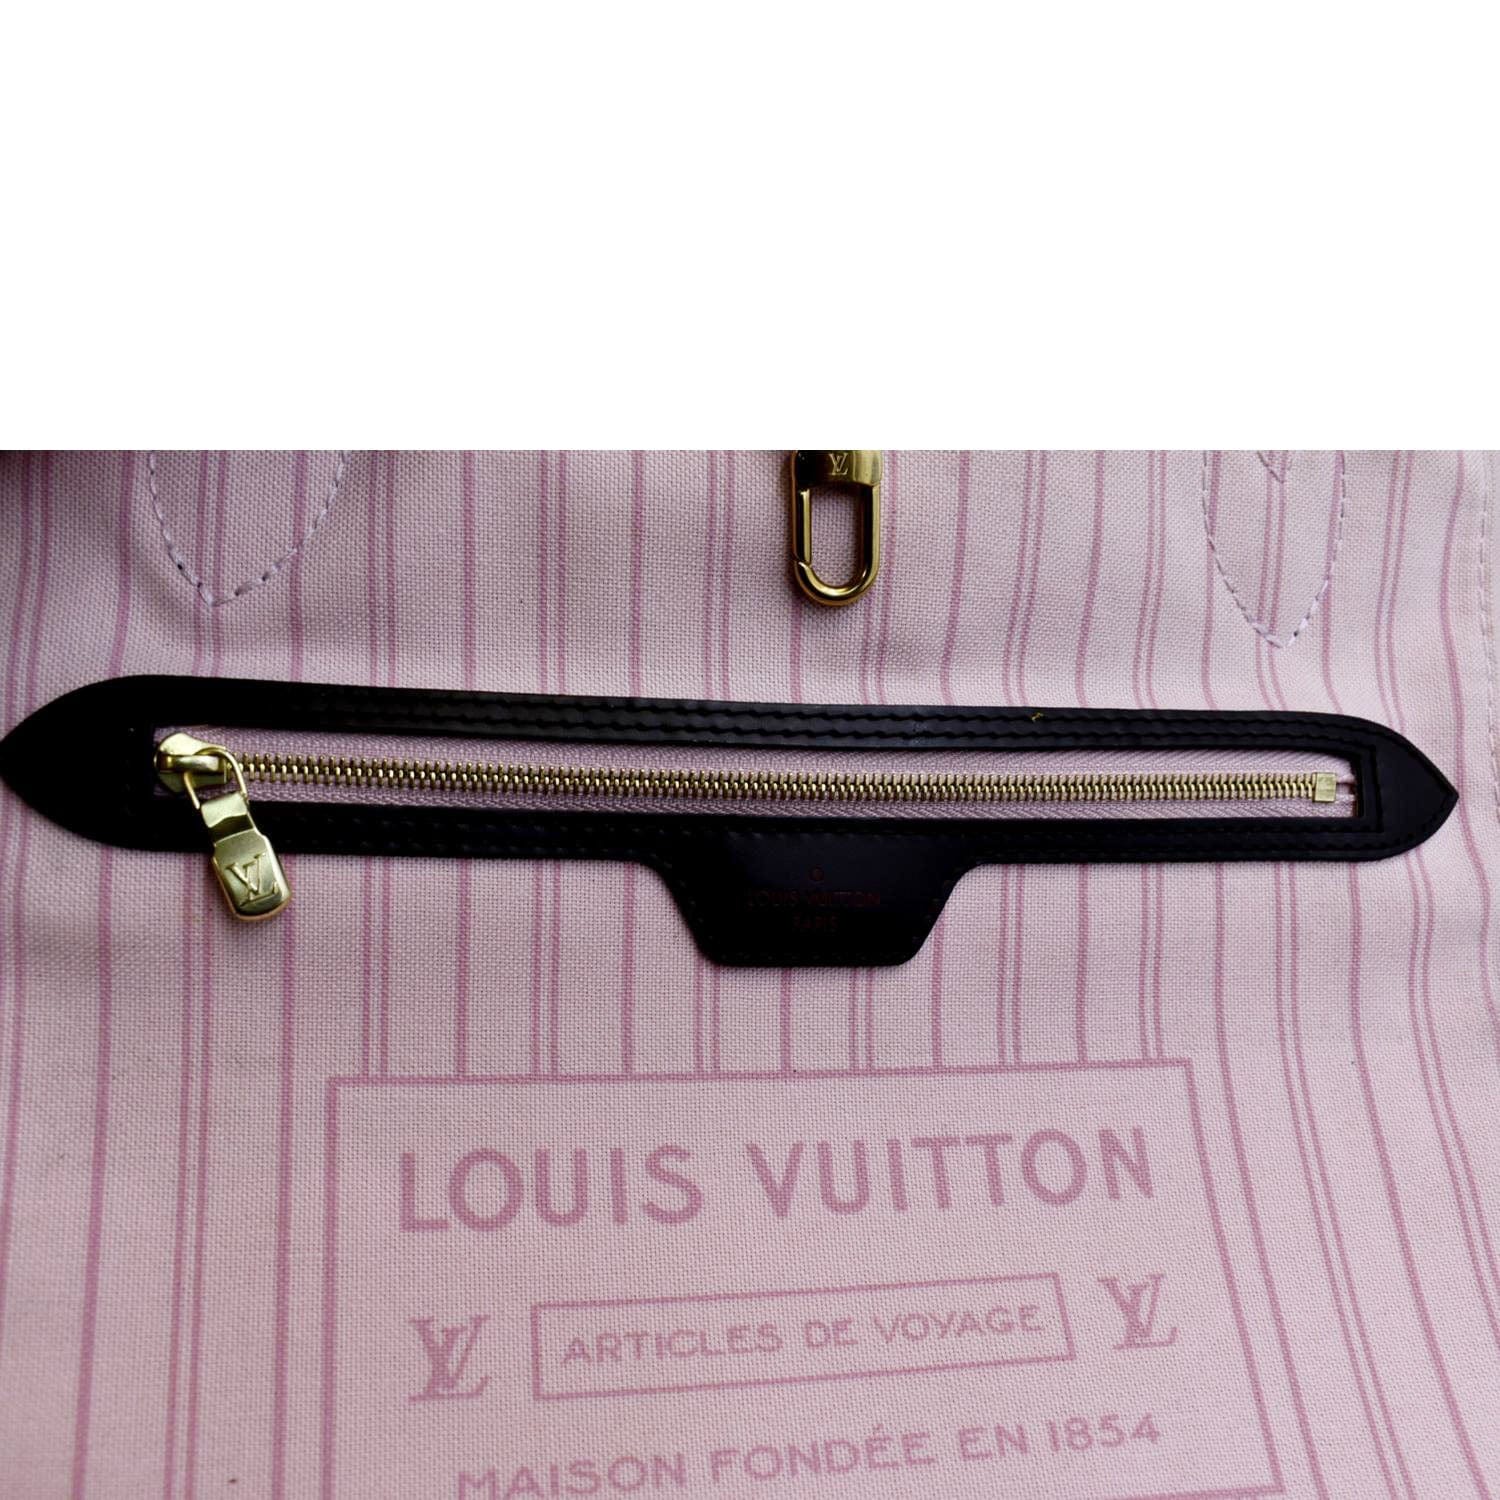 Louis Vuitton Neverfull MM Damier Ebene Rose Ballerine Pink